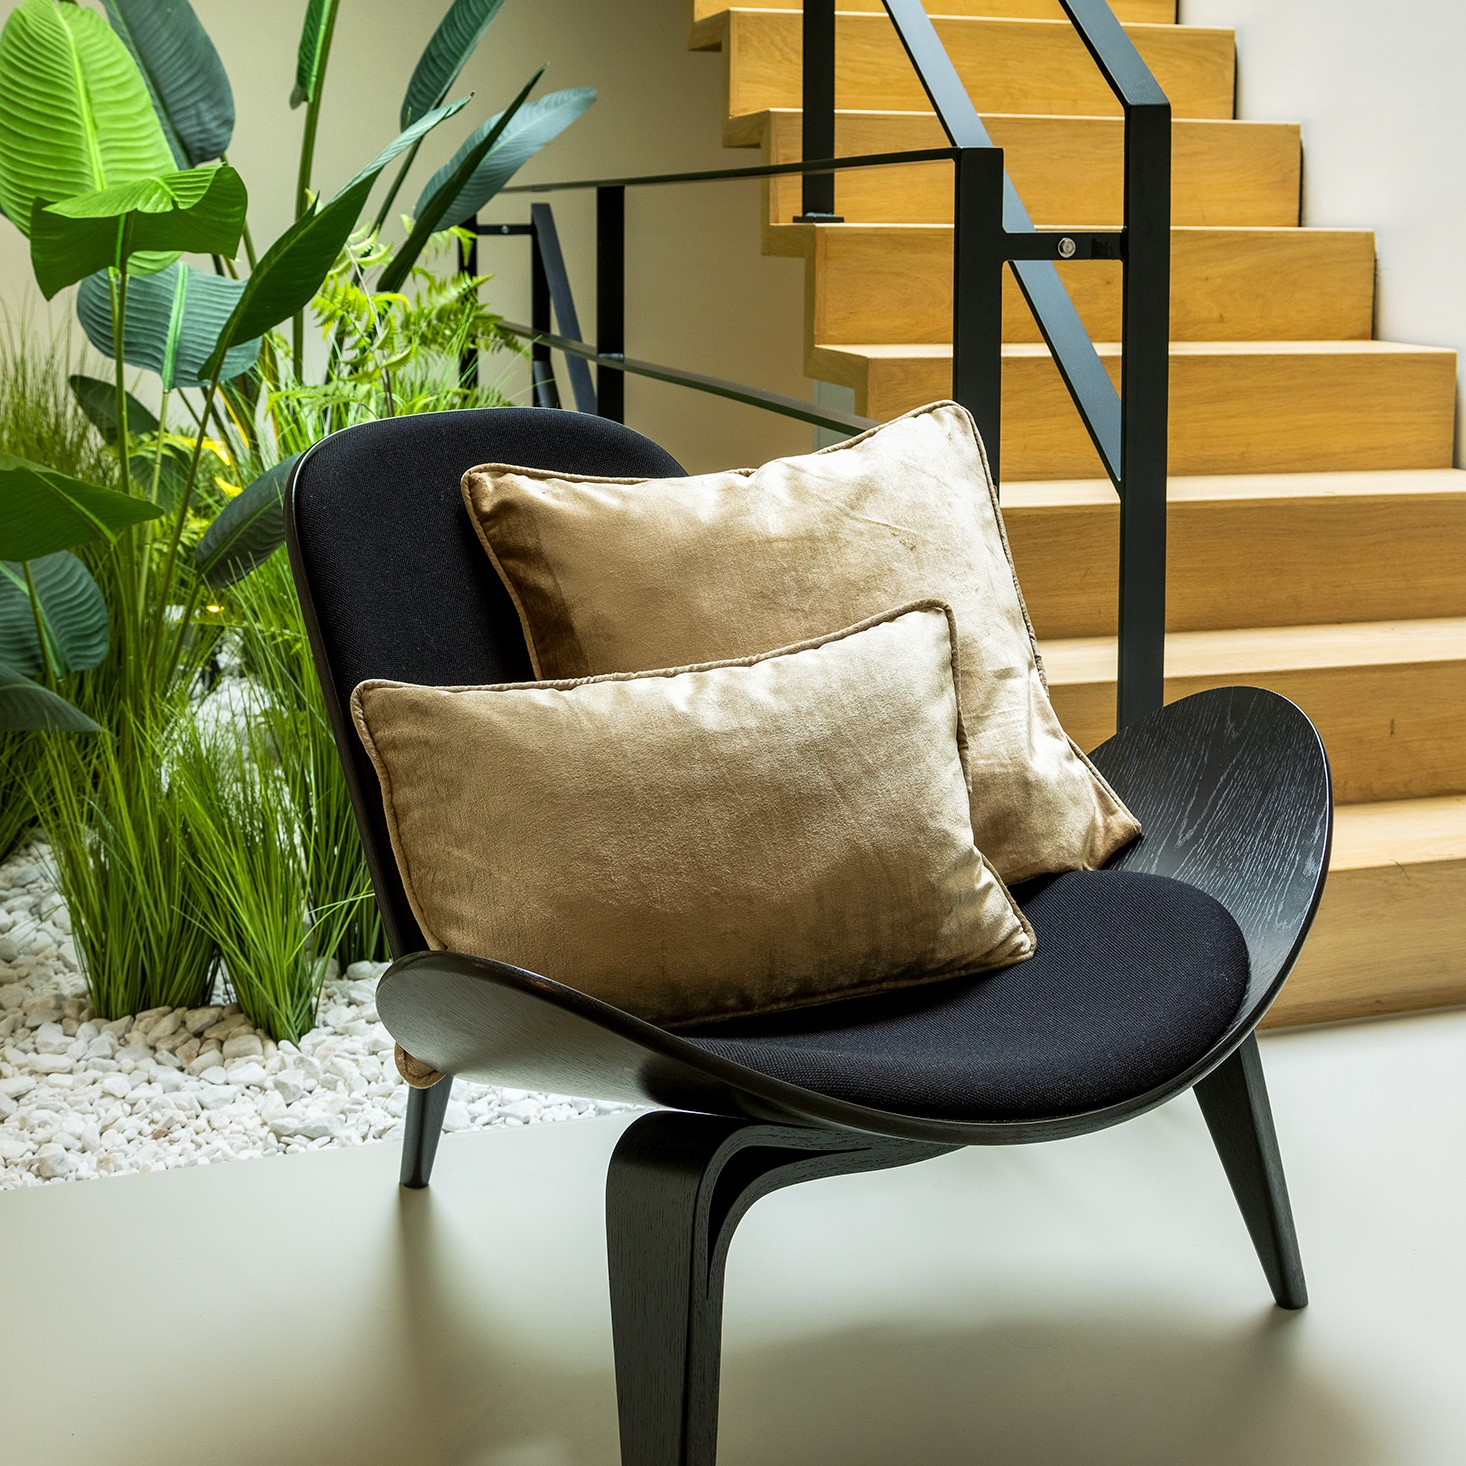 CHLOE | Cushion | 30x50 cm Pumice Stone | Beige | Hoii | With luxury inner cushion